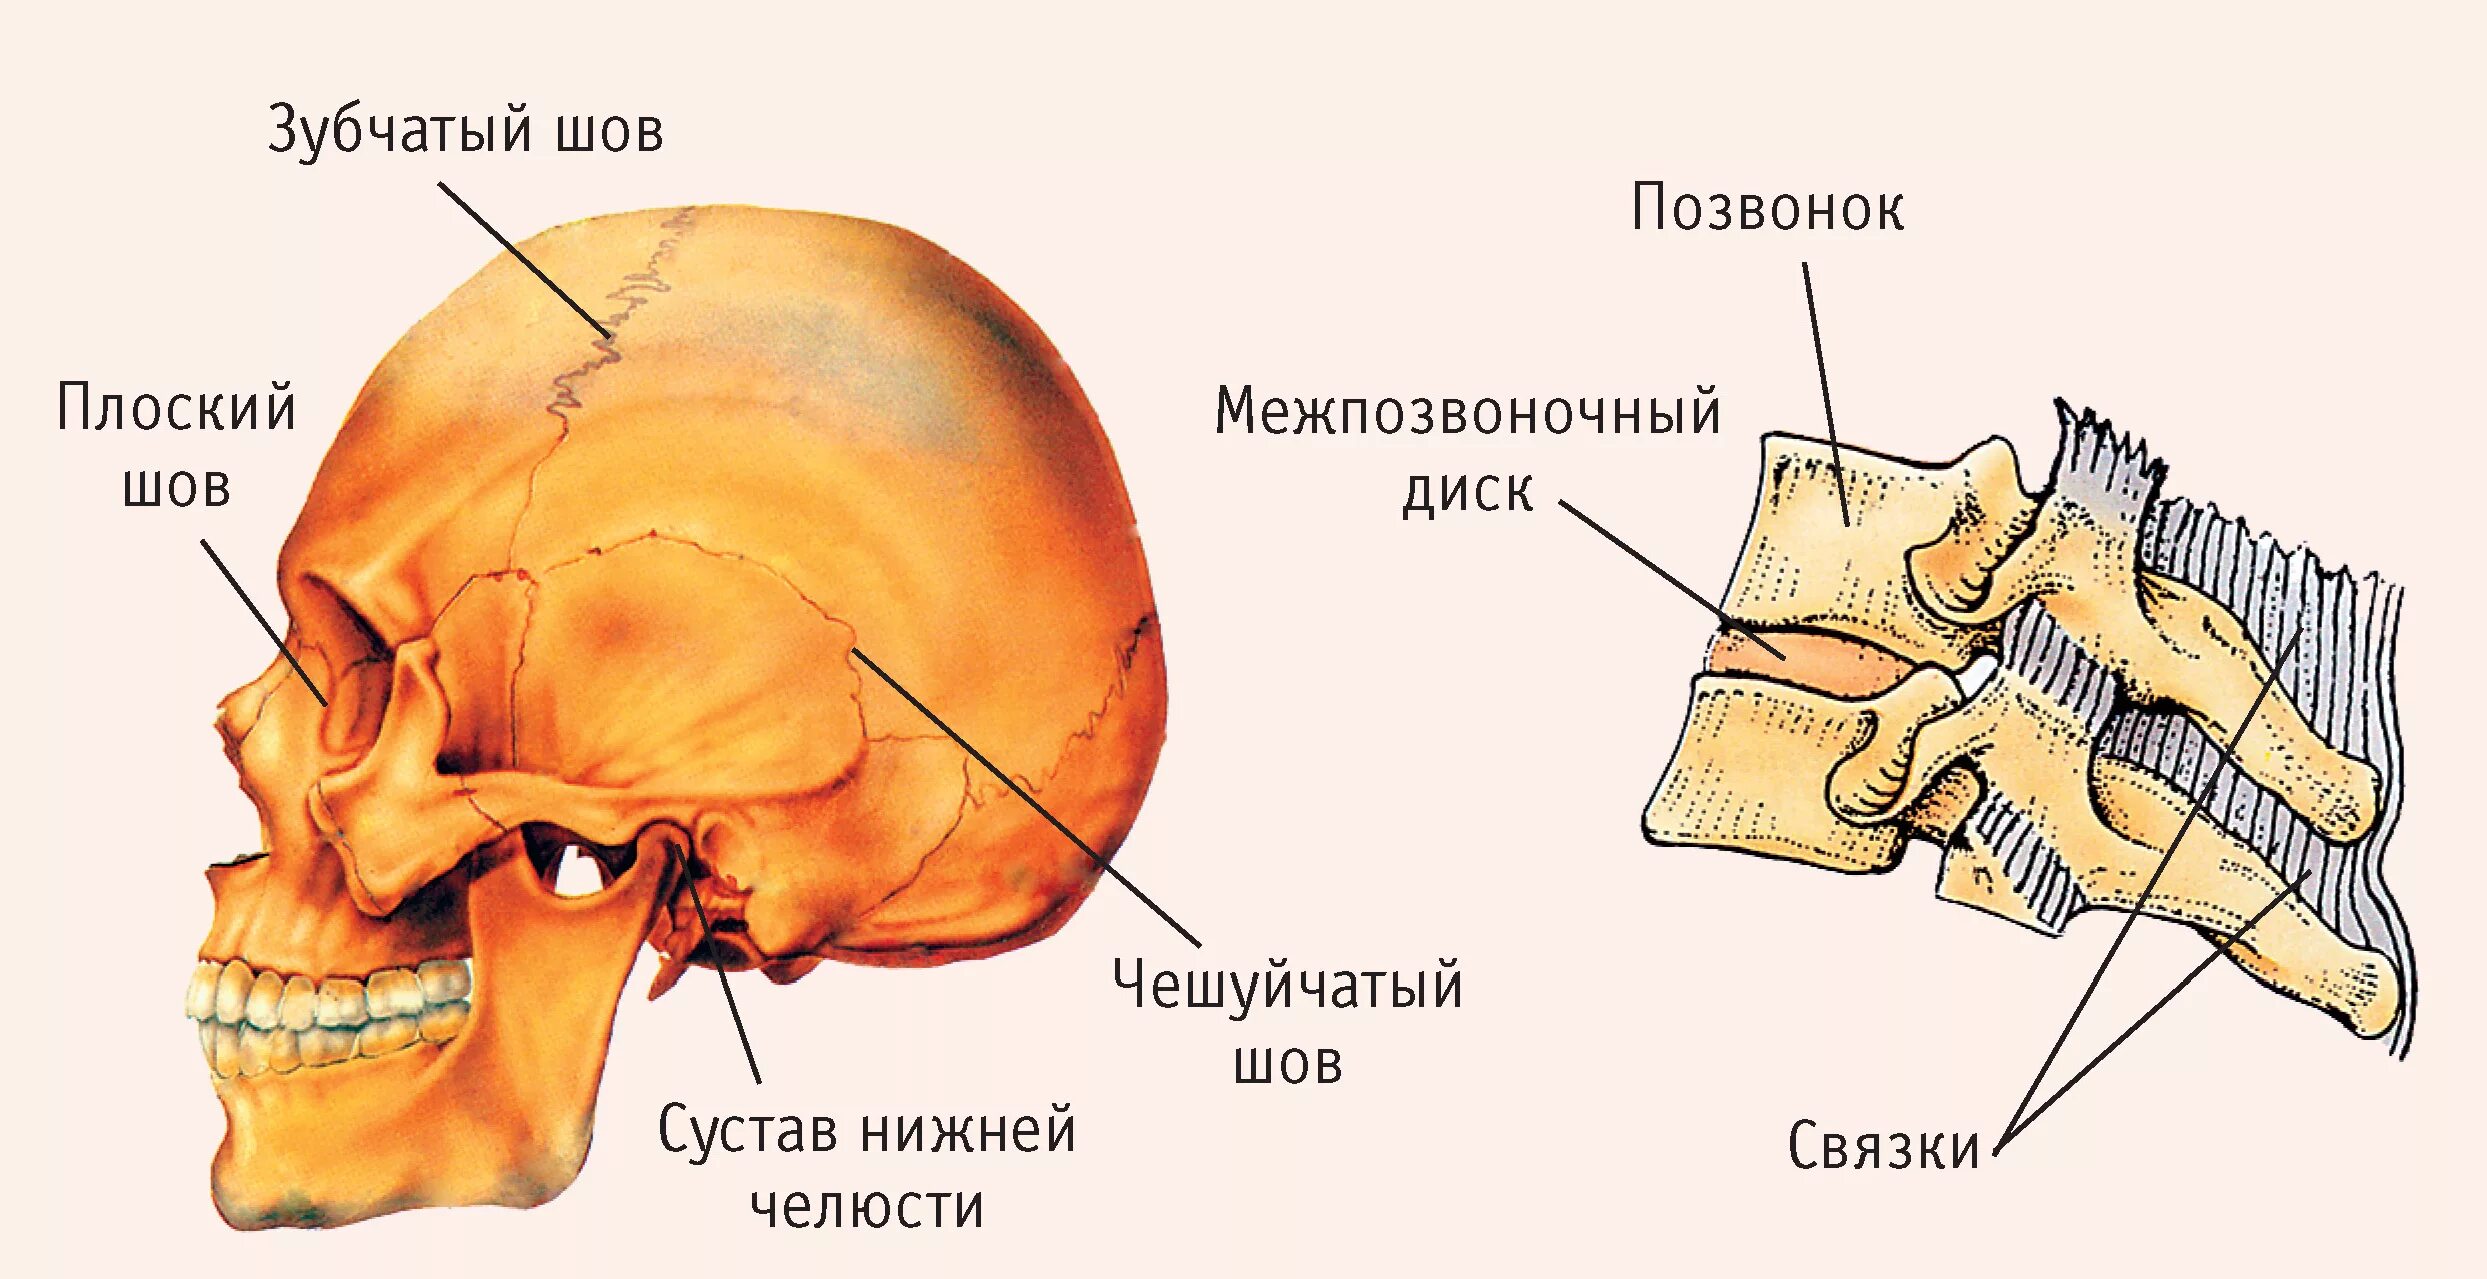 Лоб кость. Чешуйчатый шов черепа анатомия. Швы черепа анатомия зубчатый. Строение кости швы черепа. Соединения костей черепа анатомия швы.